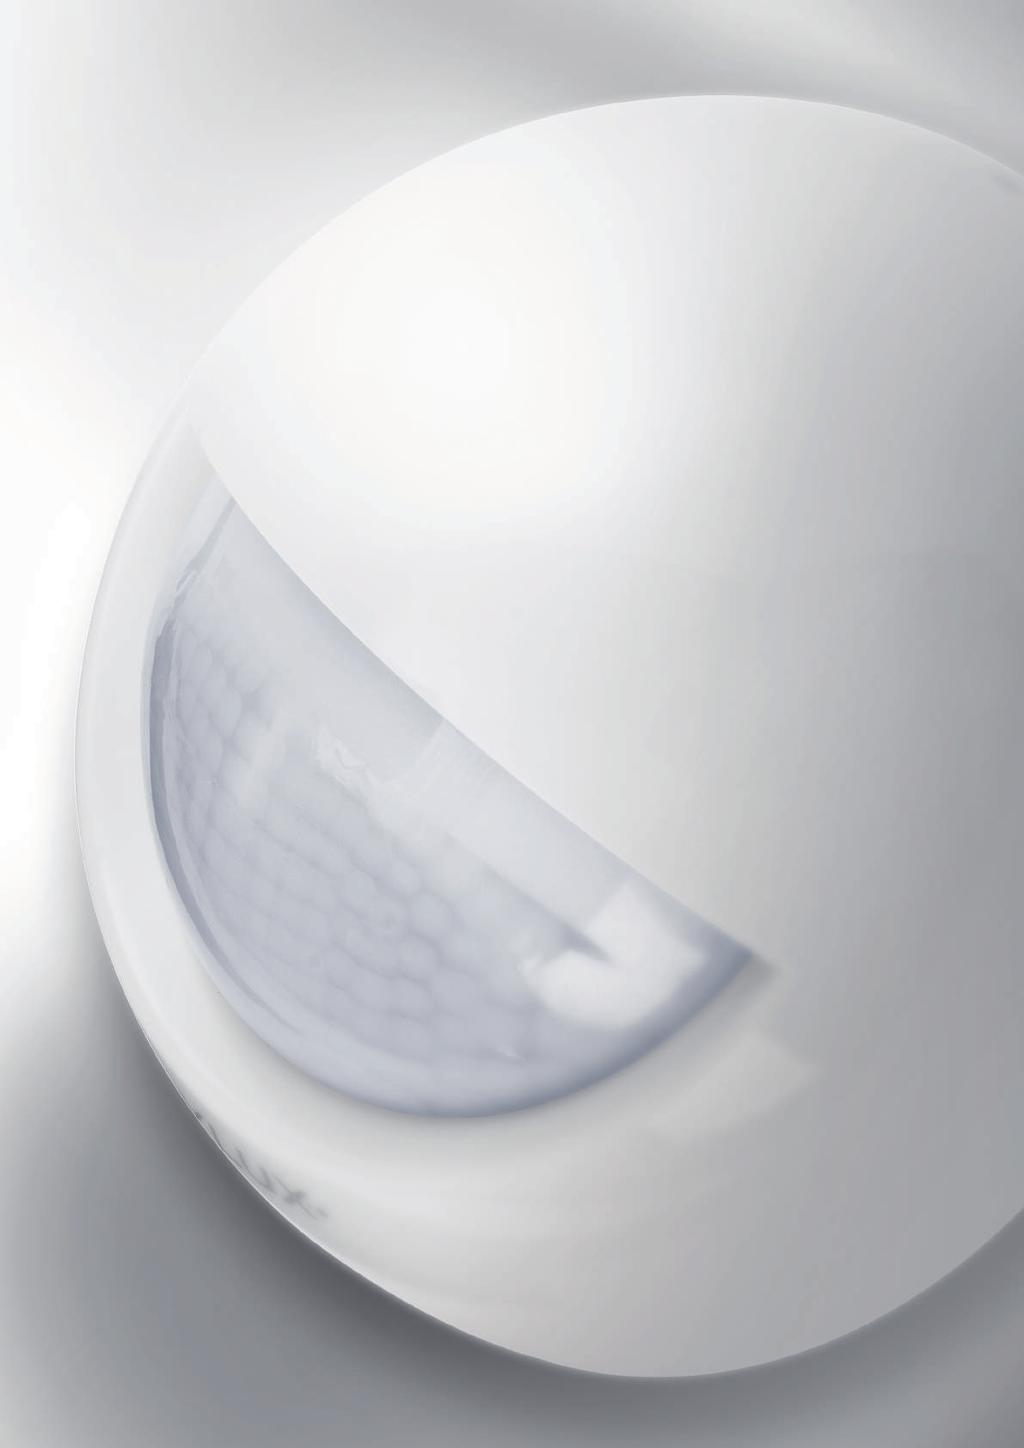 Harmonisk design Optimerar strningen av LEDbelsningsarmaturer i tterområdet Individuella bevakningsräckvidder för två oner AUTOMATION YTTEROMRÅDEN RÖRELSEDETEKTORER MD-W FUNKTION MÖTER DESIGN